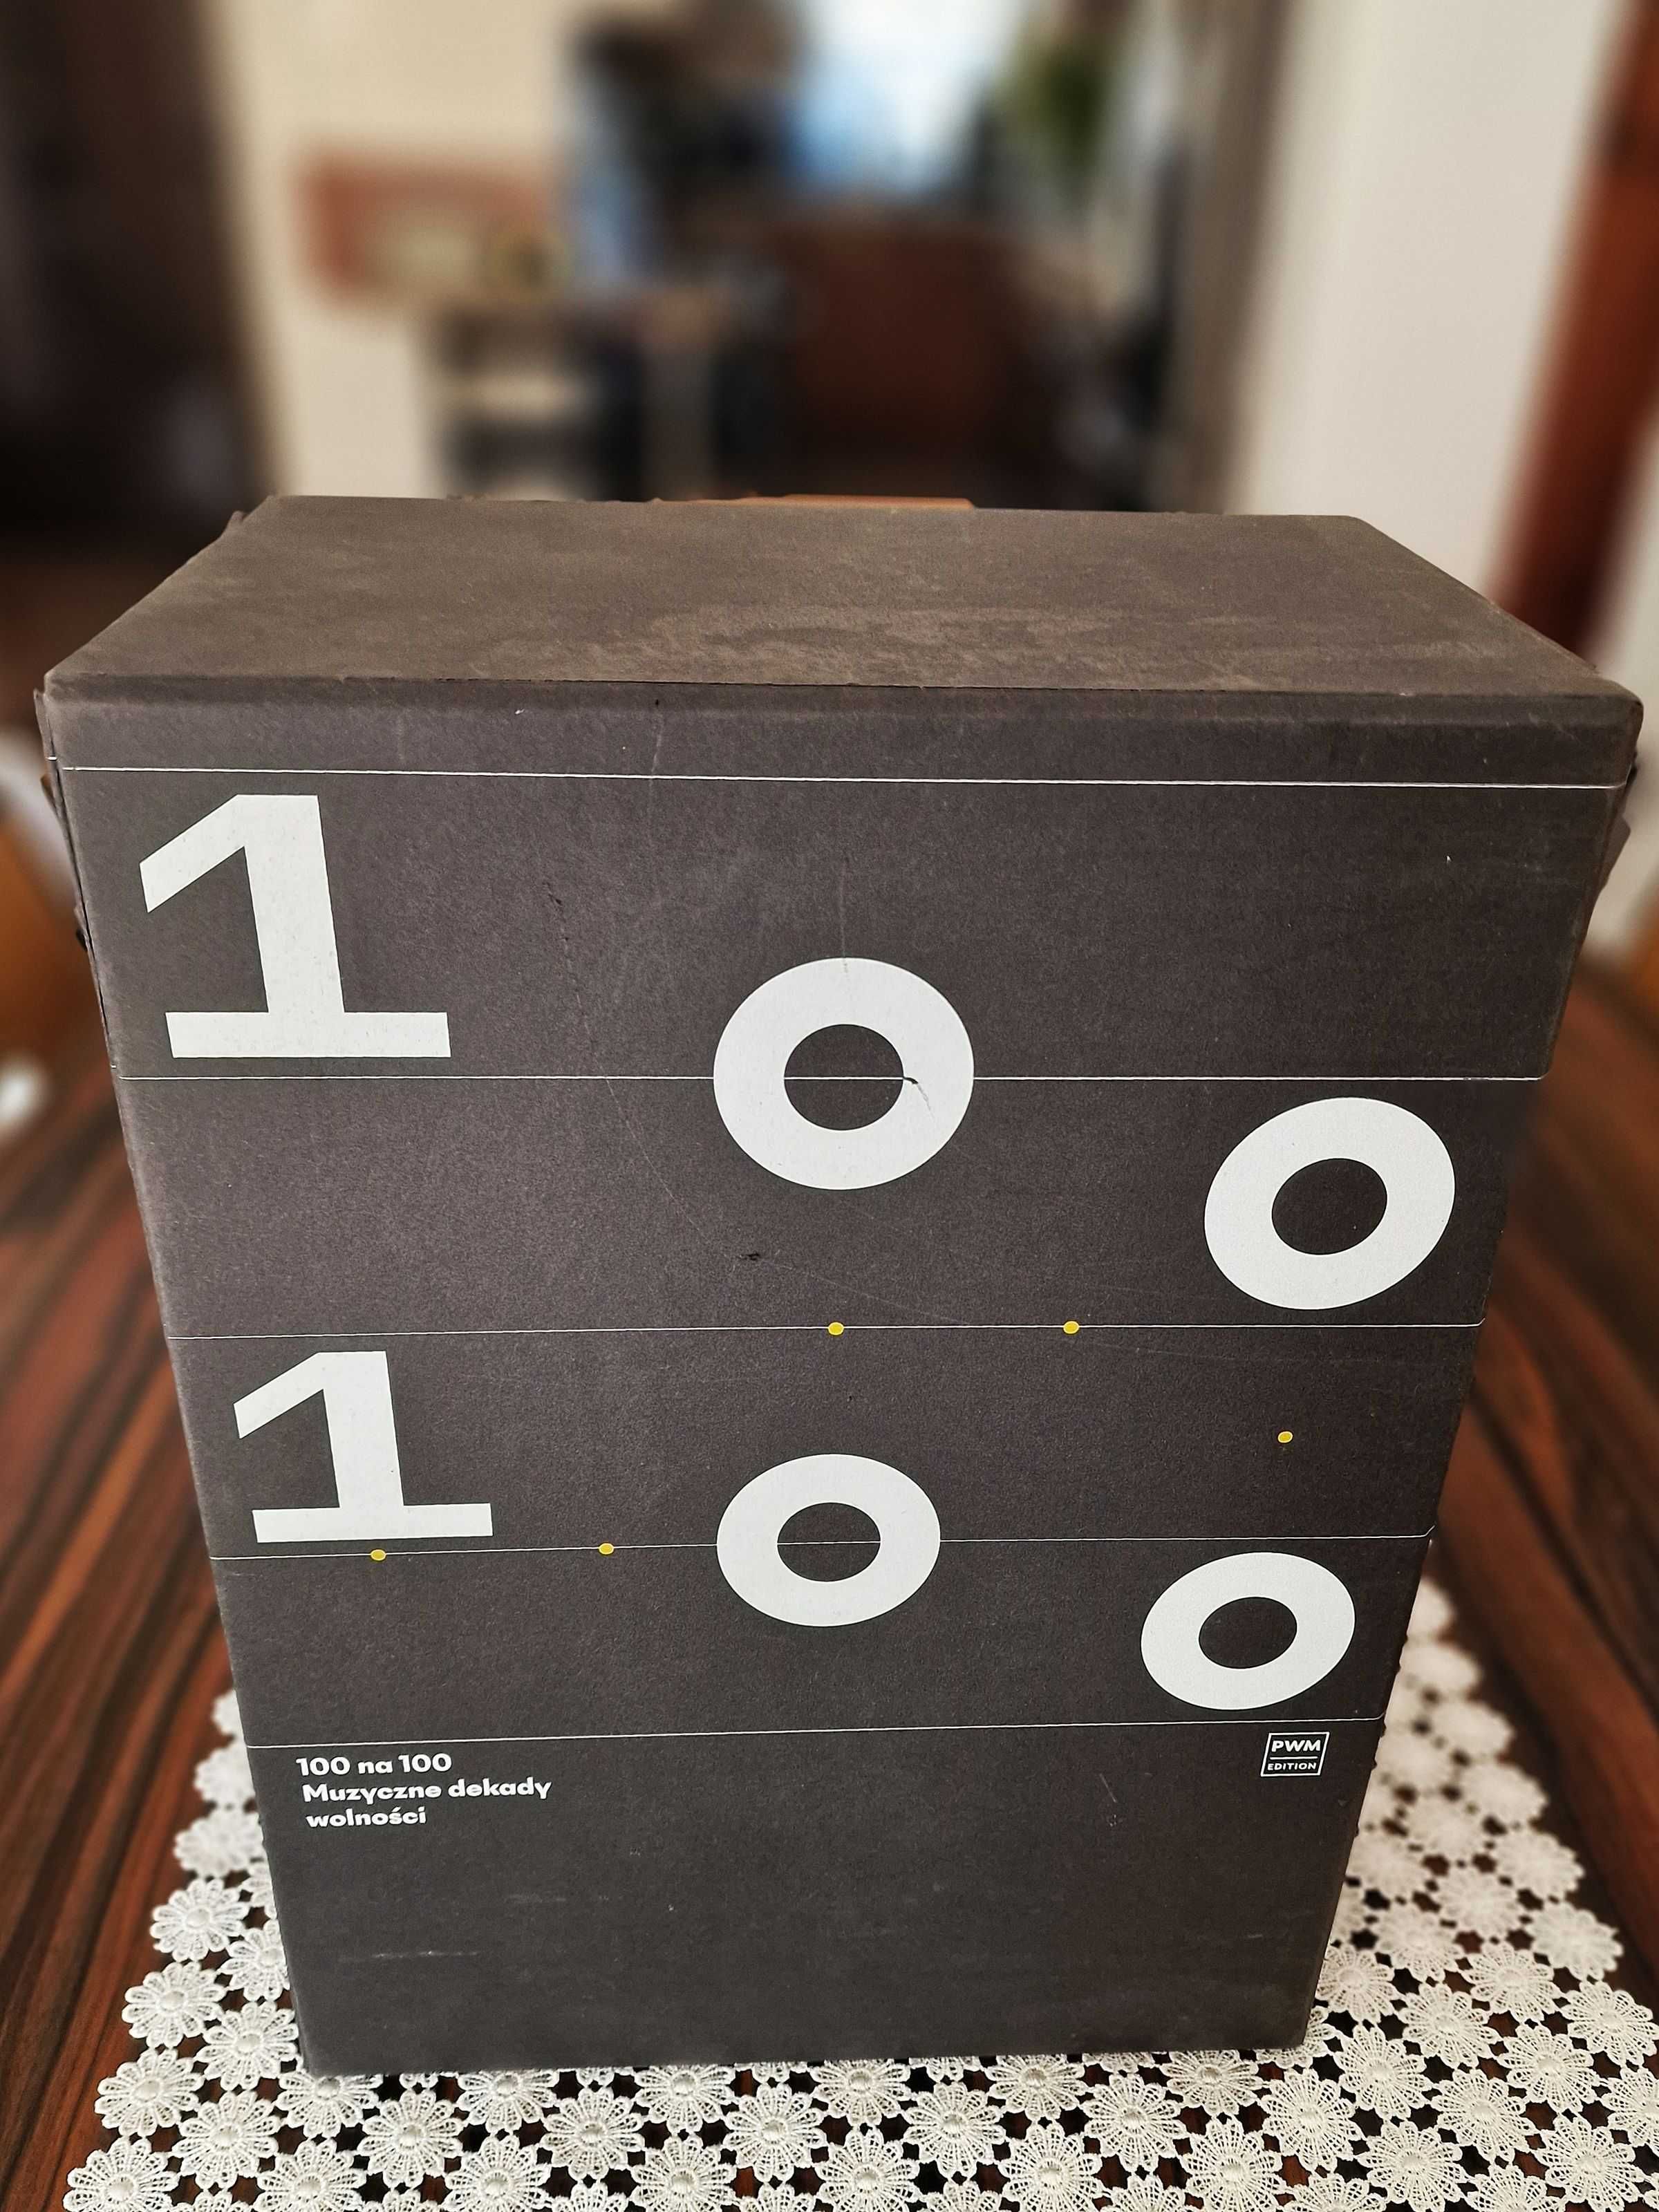 100 na 100 Muzyczne dekady wolności BOX 36CD